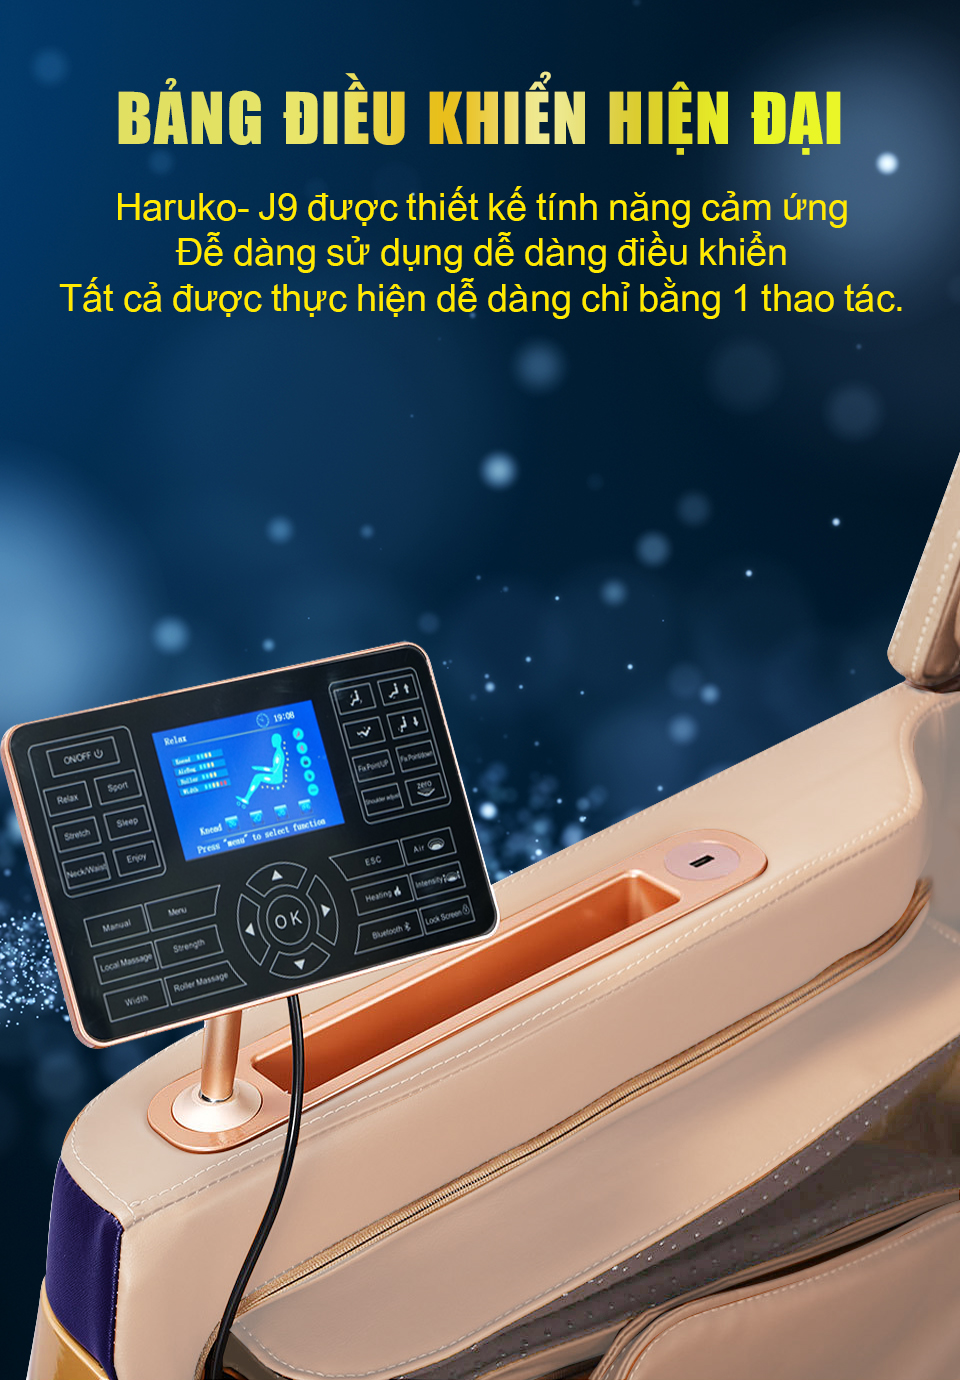 Ghế massage Haruko J9 được trang bị bảng điều khiển hiện đại và thiết kế dễ dàng để sử dụng chỉ trong 1 thao tác